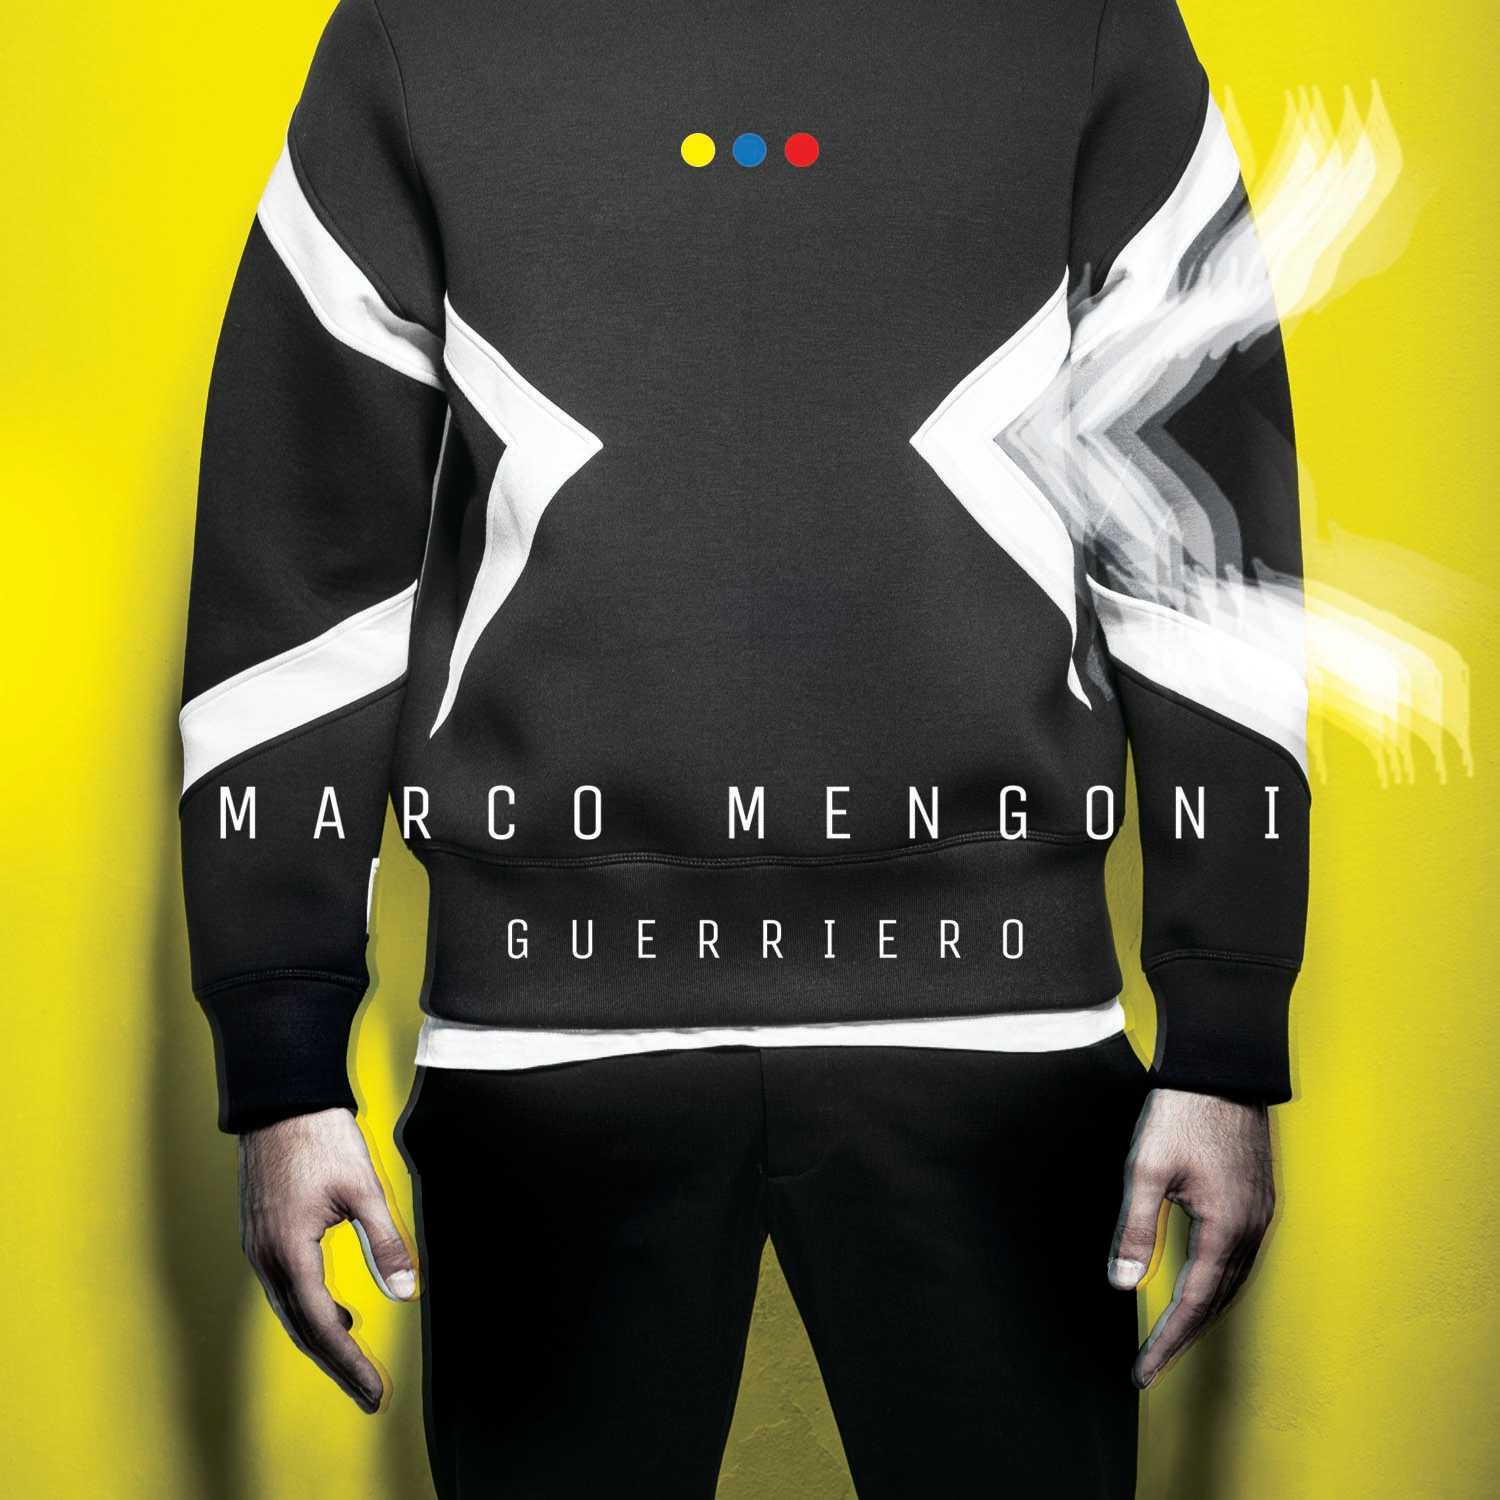 Marco Mengoni, da domani in radio "Guerriero" e disponibile sui digital store